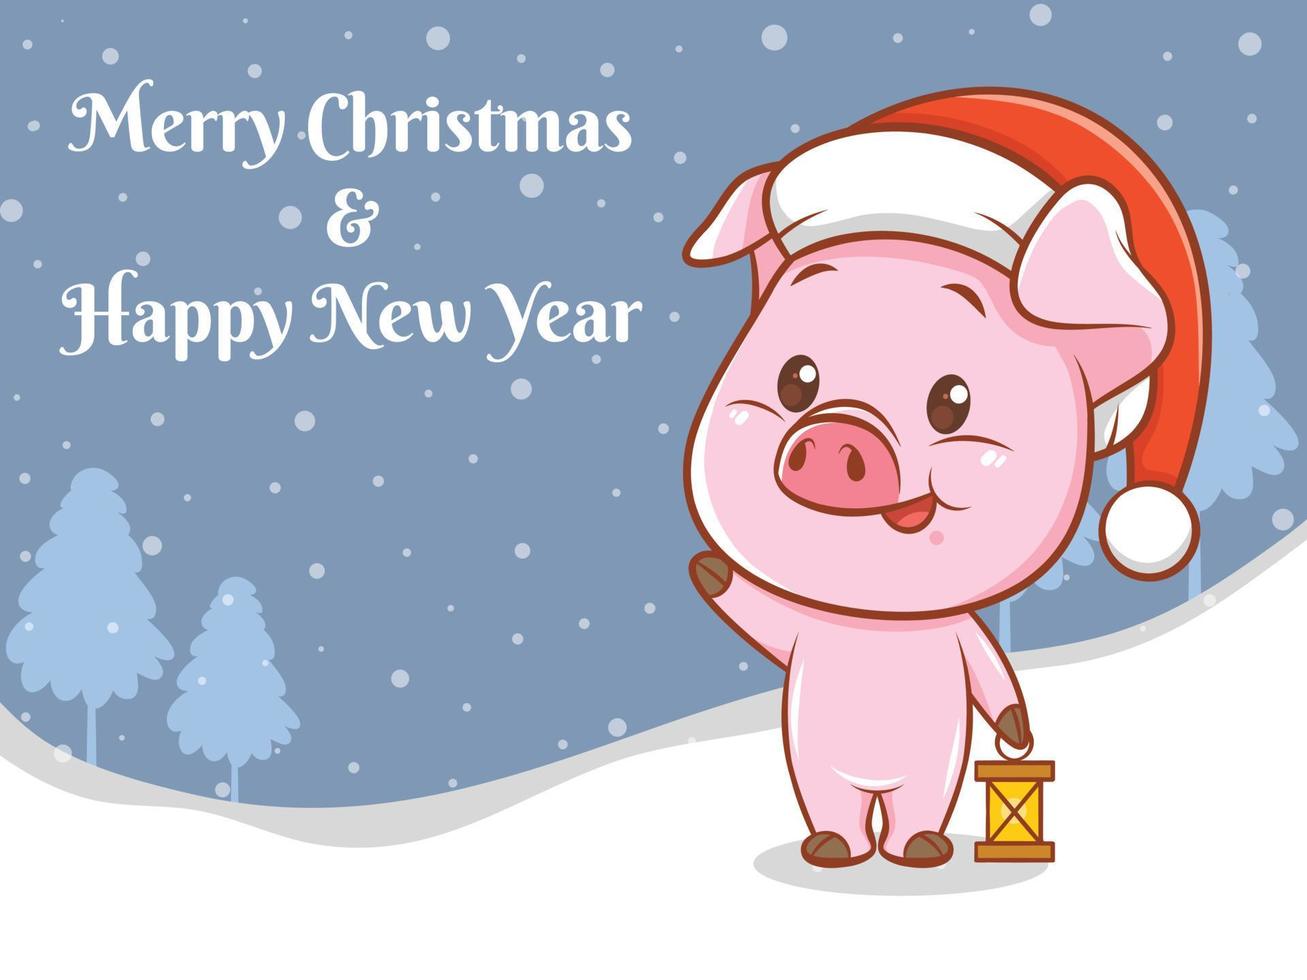 süße Schwein-Cartoon-Figur mit frohen Weihnachten und guten Rutsch ins neue Jahr Grußbanner vektor